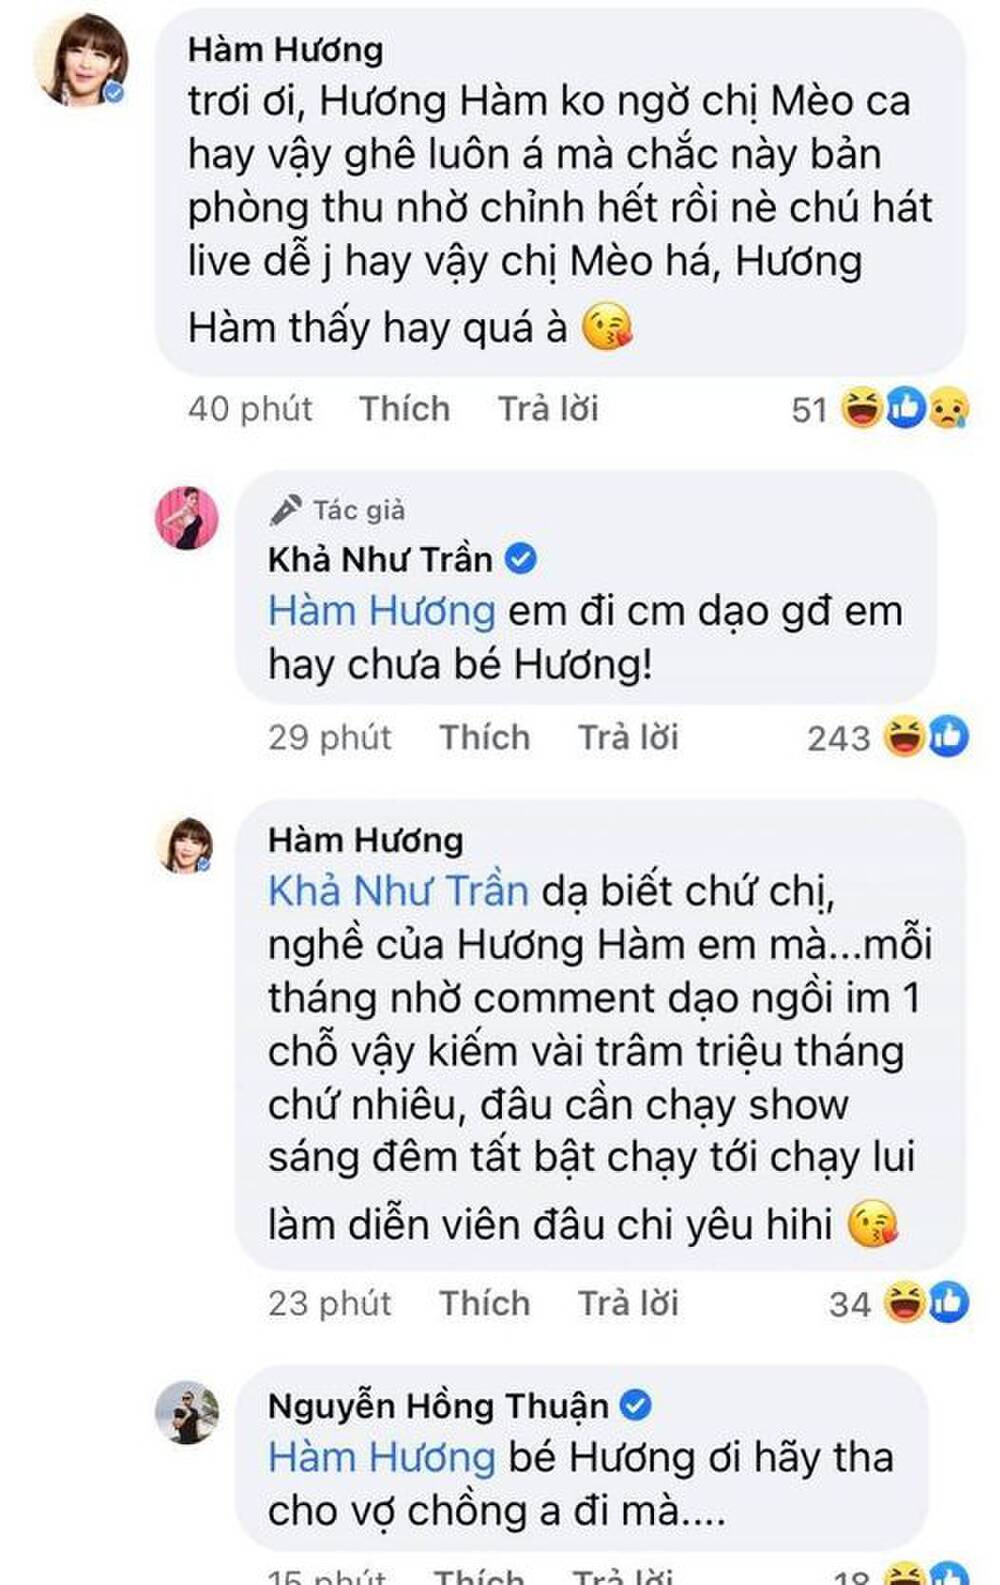 Mới đây, Hàm Hương còn gây chiến với Khả Như và nhạc sĩ Nguyễn Hồng Thuận